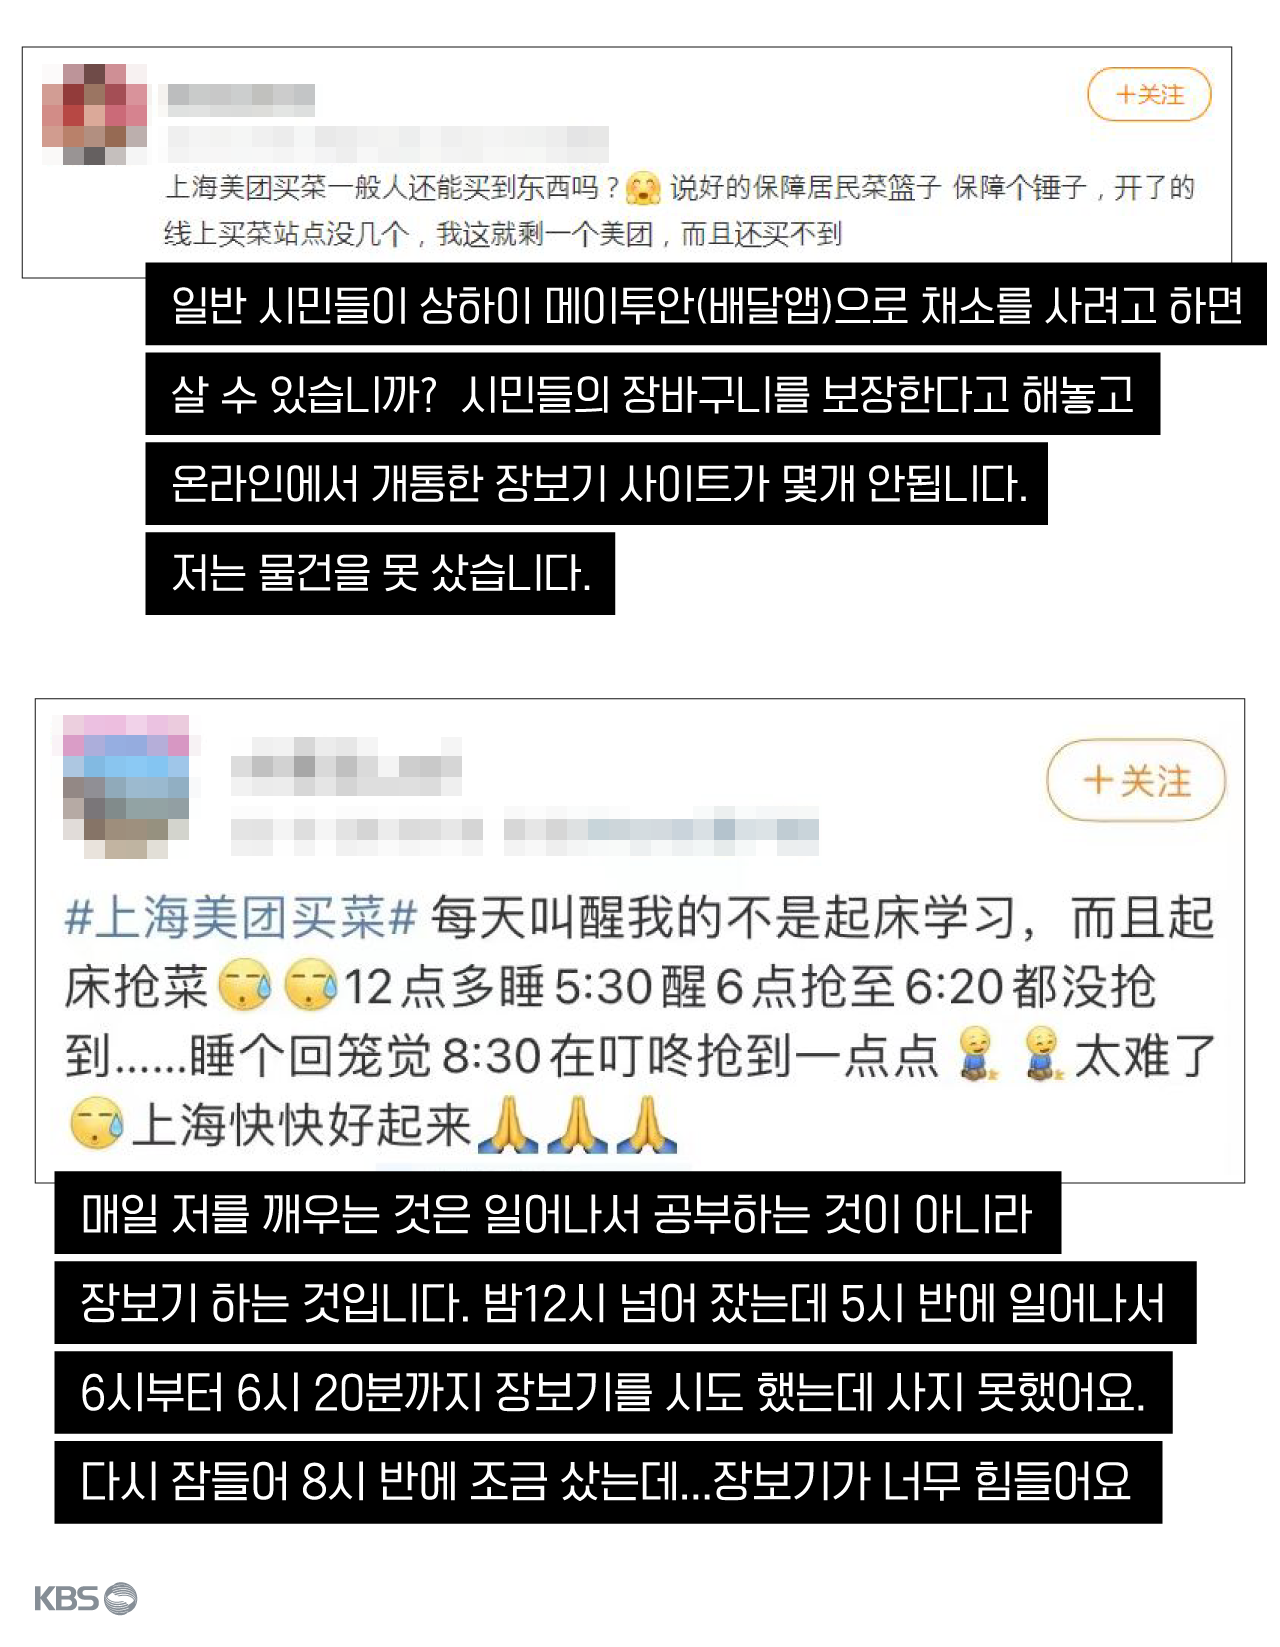 배달 앱으로 물건을 사기 힘든 현실을 호소하는 중국 네티즌 (출처: 웨이보)